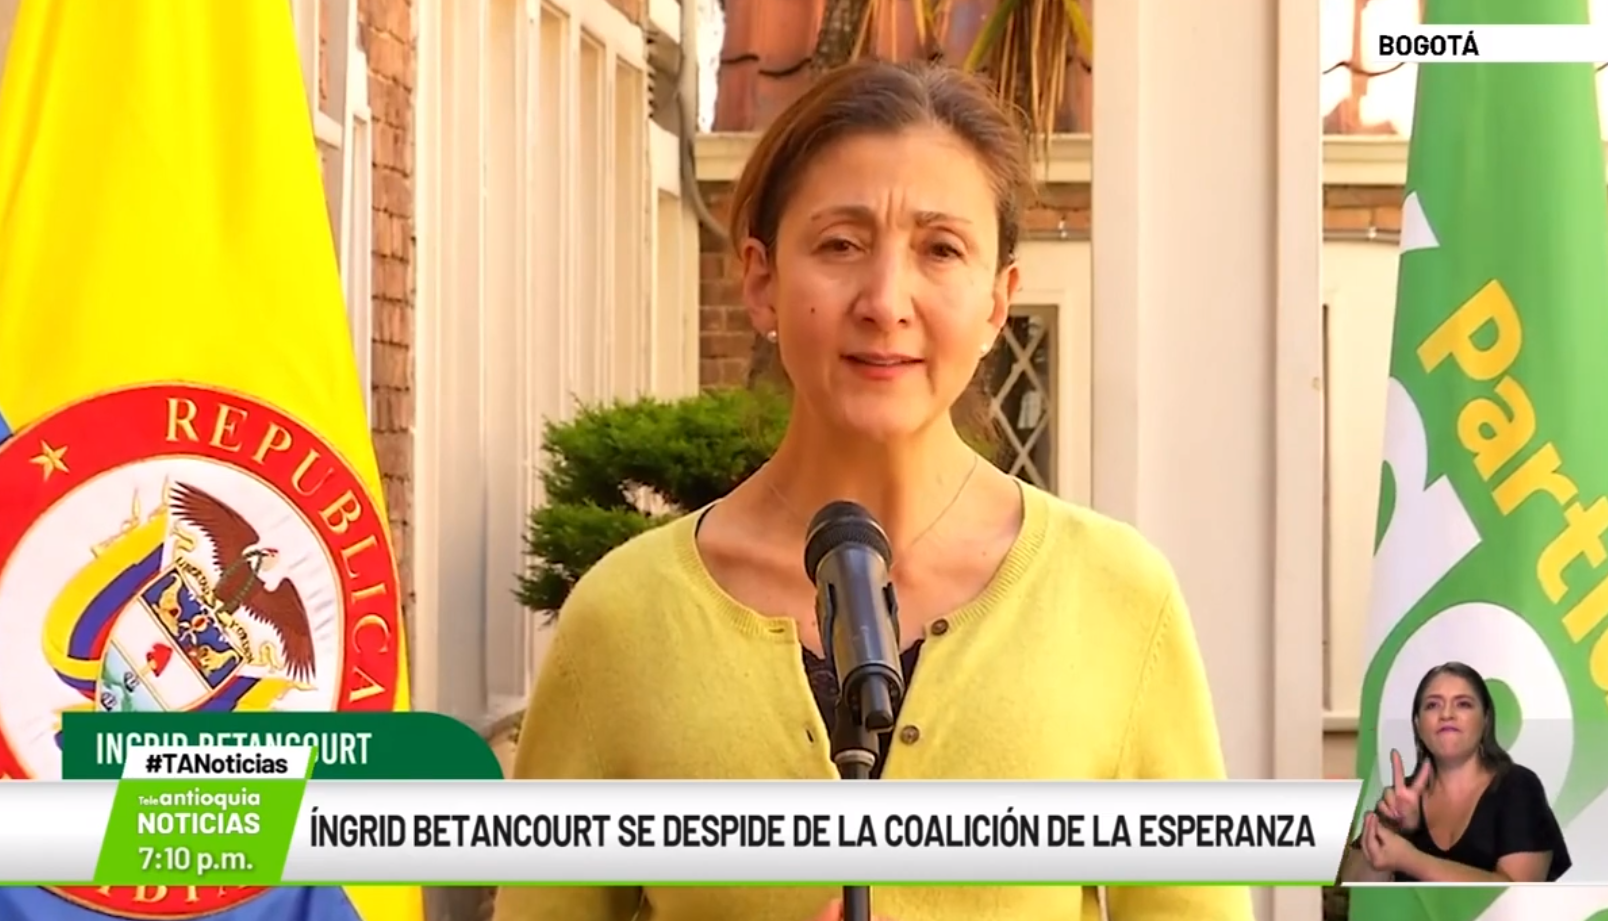 Ingird Betancour se despide de la coalición de La Esperanza